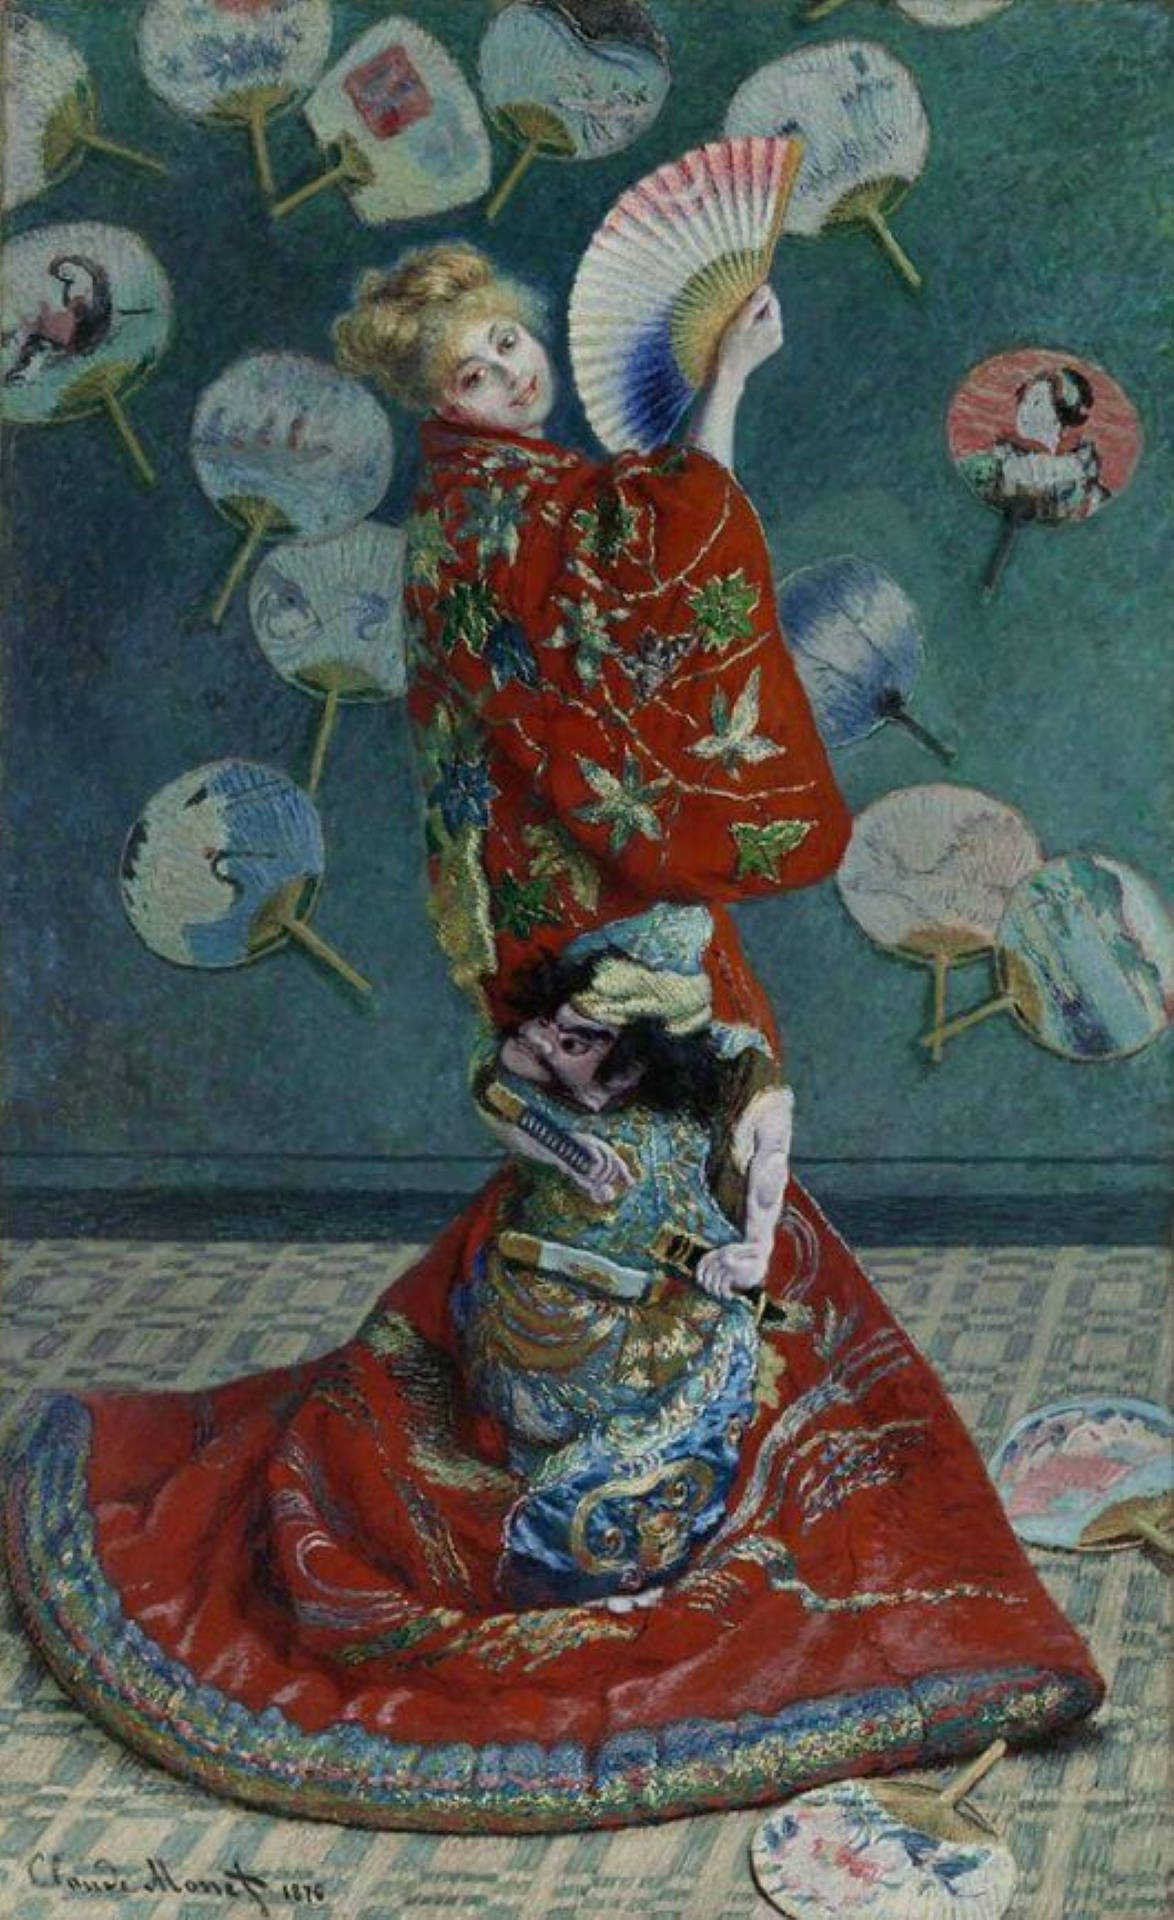 Lajaponaise Von Claude Monet Wallpaper